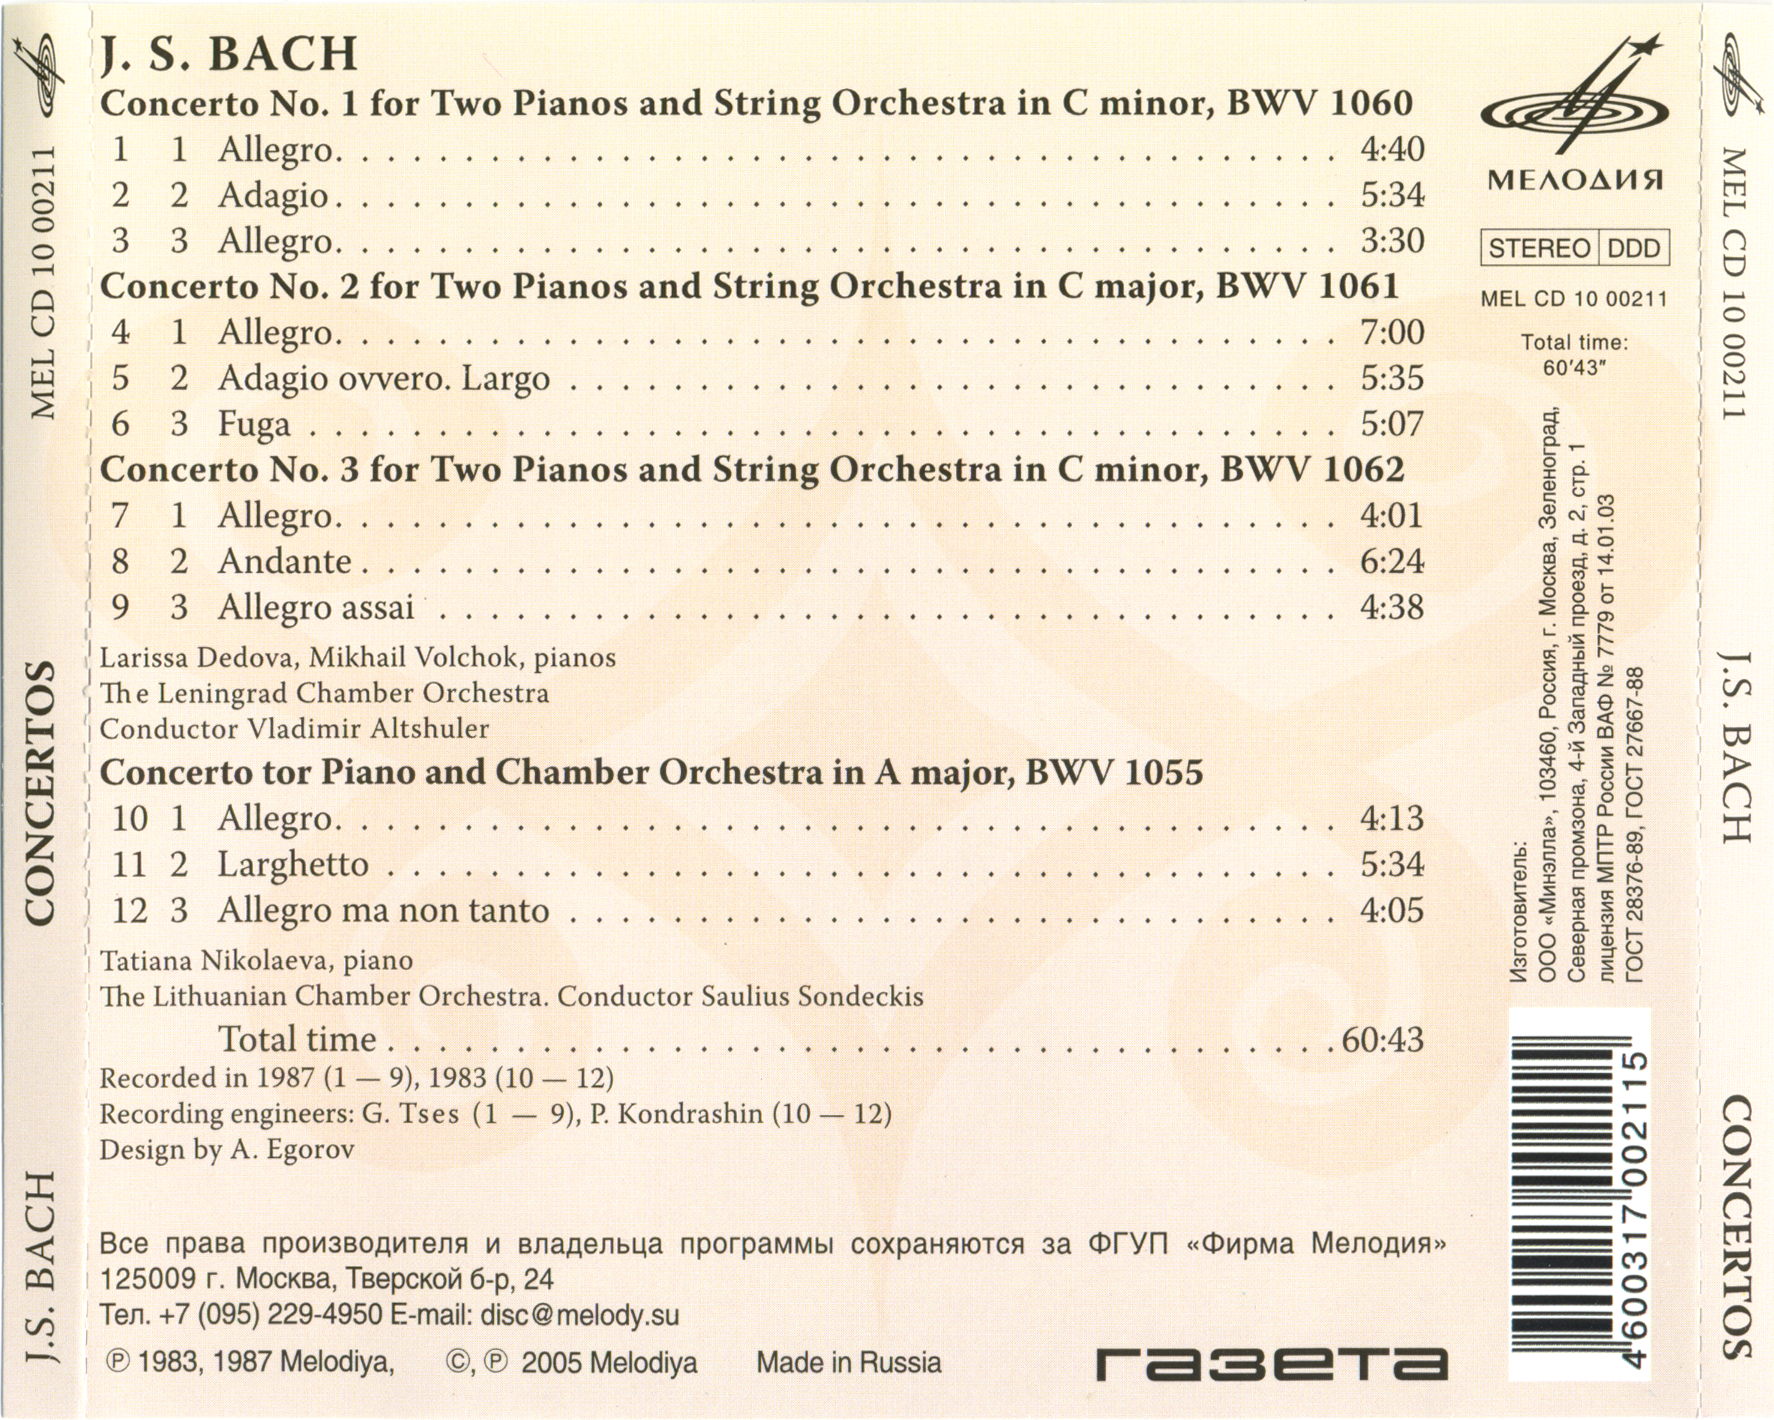 И. С. БАХ (1685 -1750): Концерты для двух ф-но с оркестром